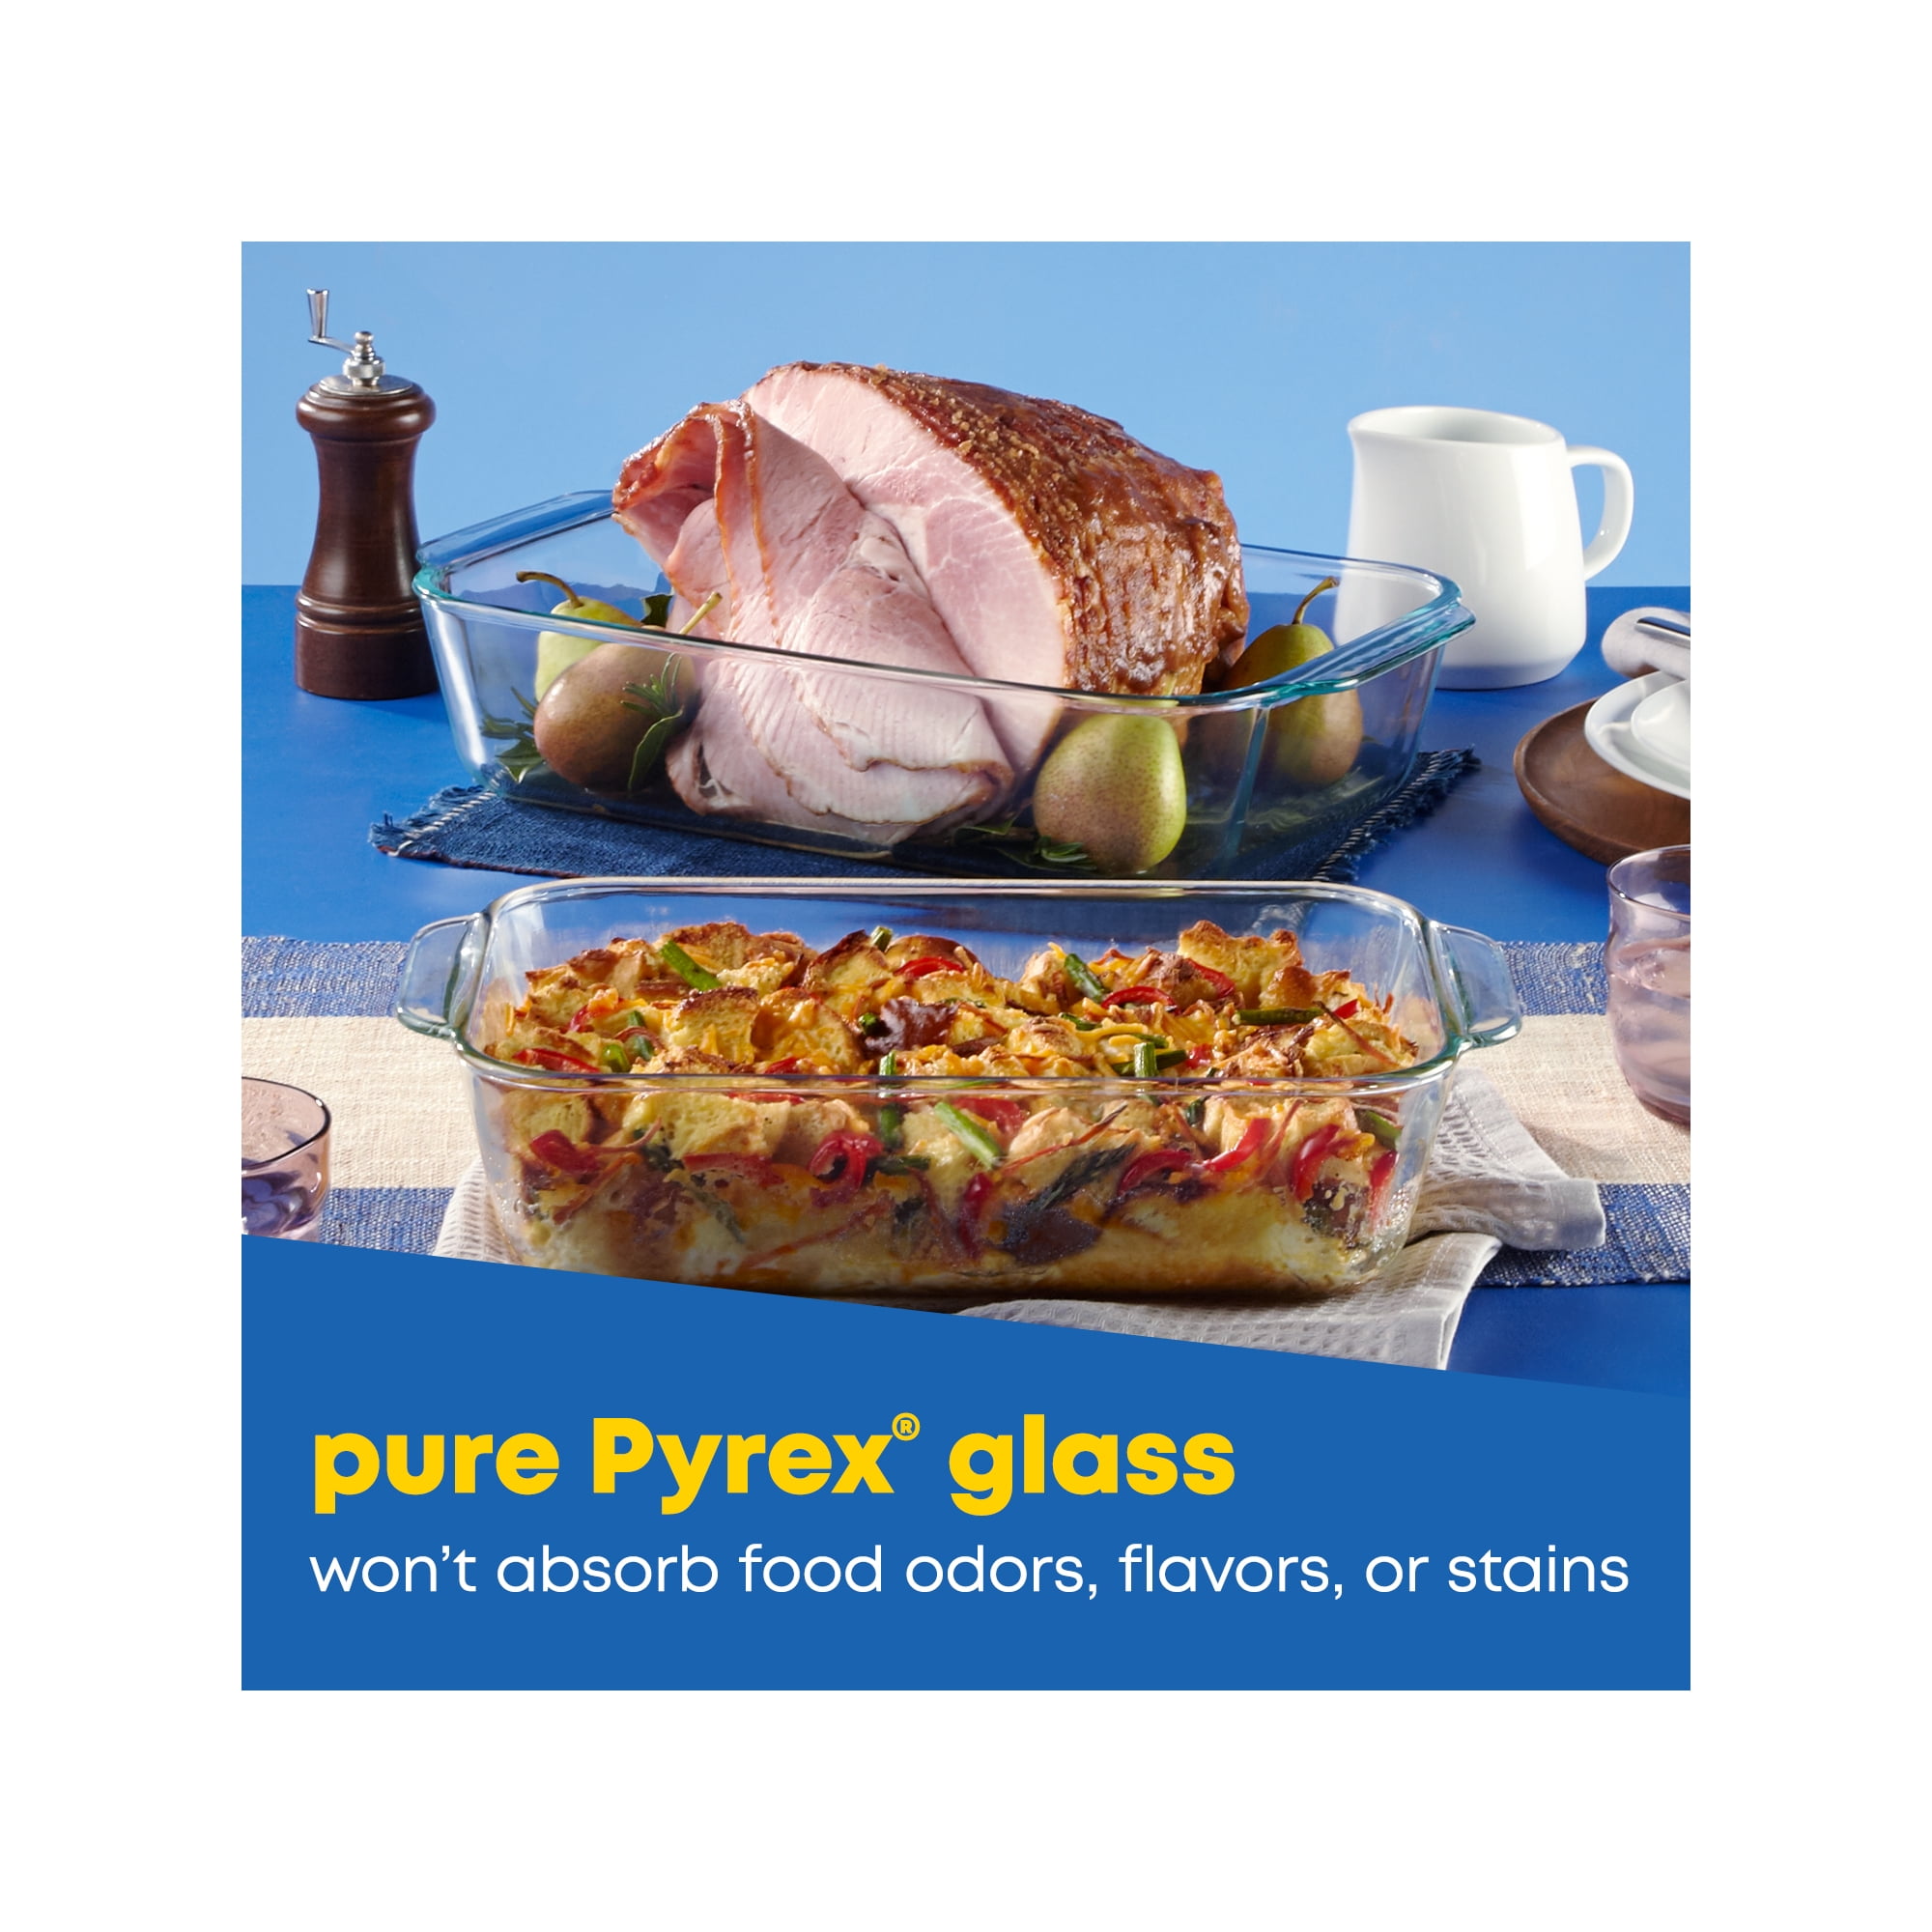 Pyrex 8x8 Square Baking Dish - Whisk